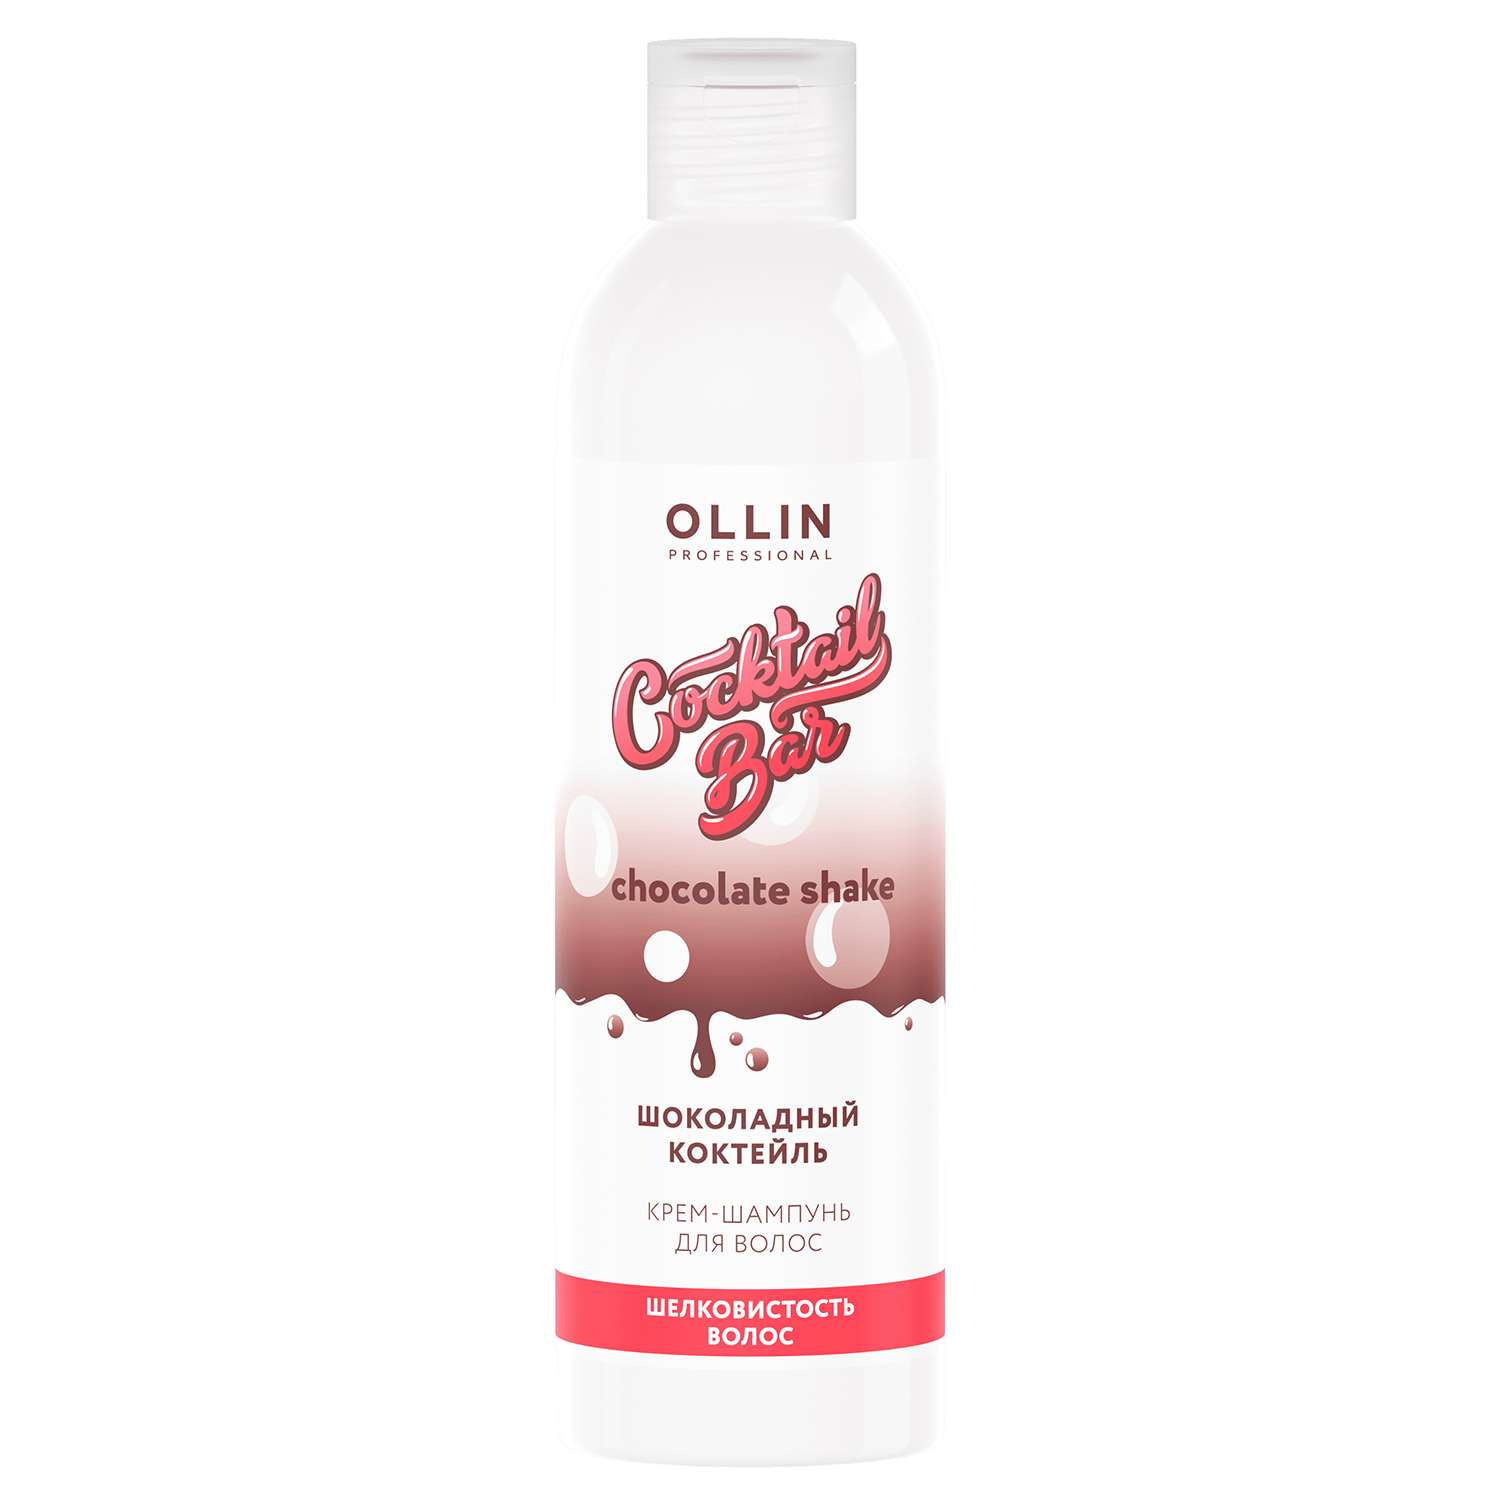 Крем-шампунь Ollin COCKTAIL BAR для шелковистости волос шоколадный коктейль 400 мл - фото 1